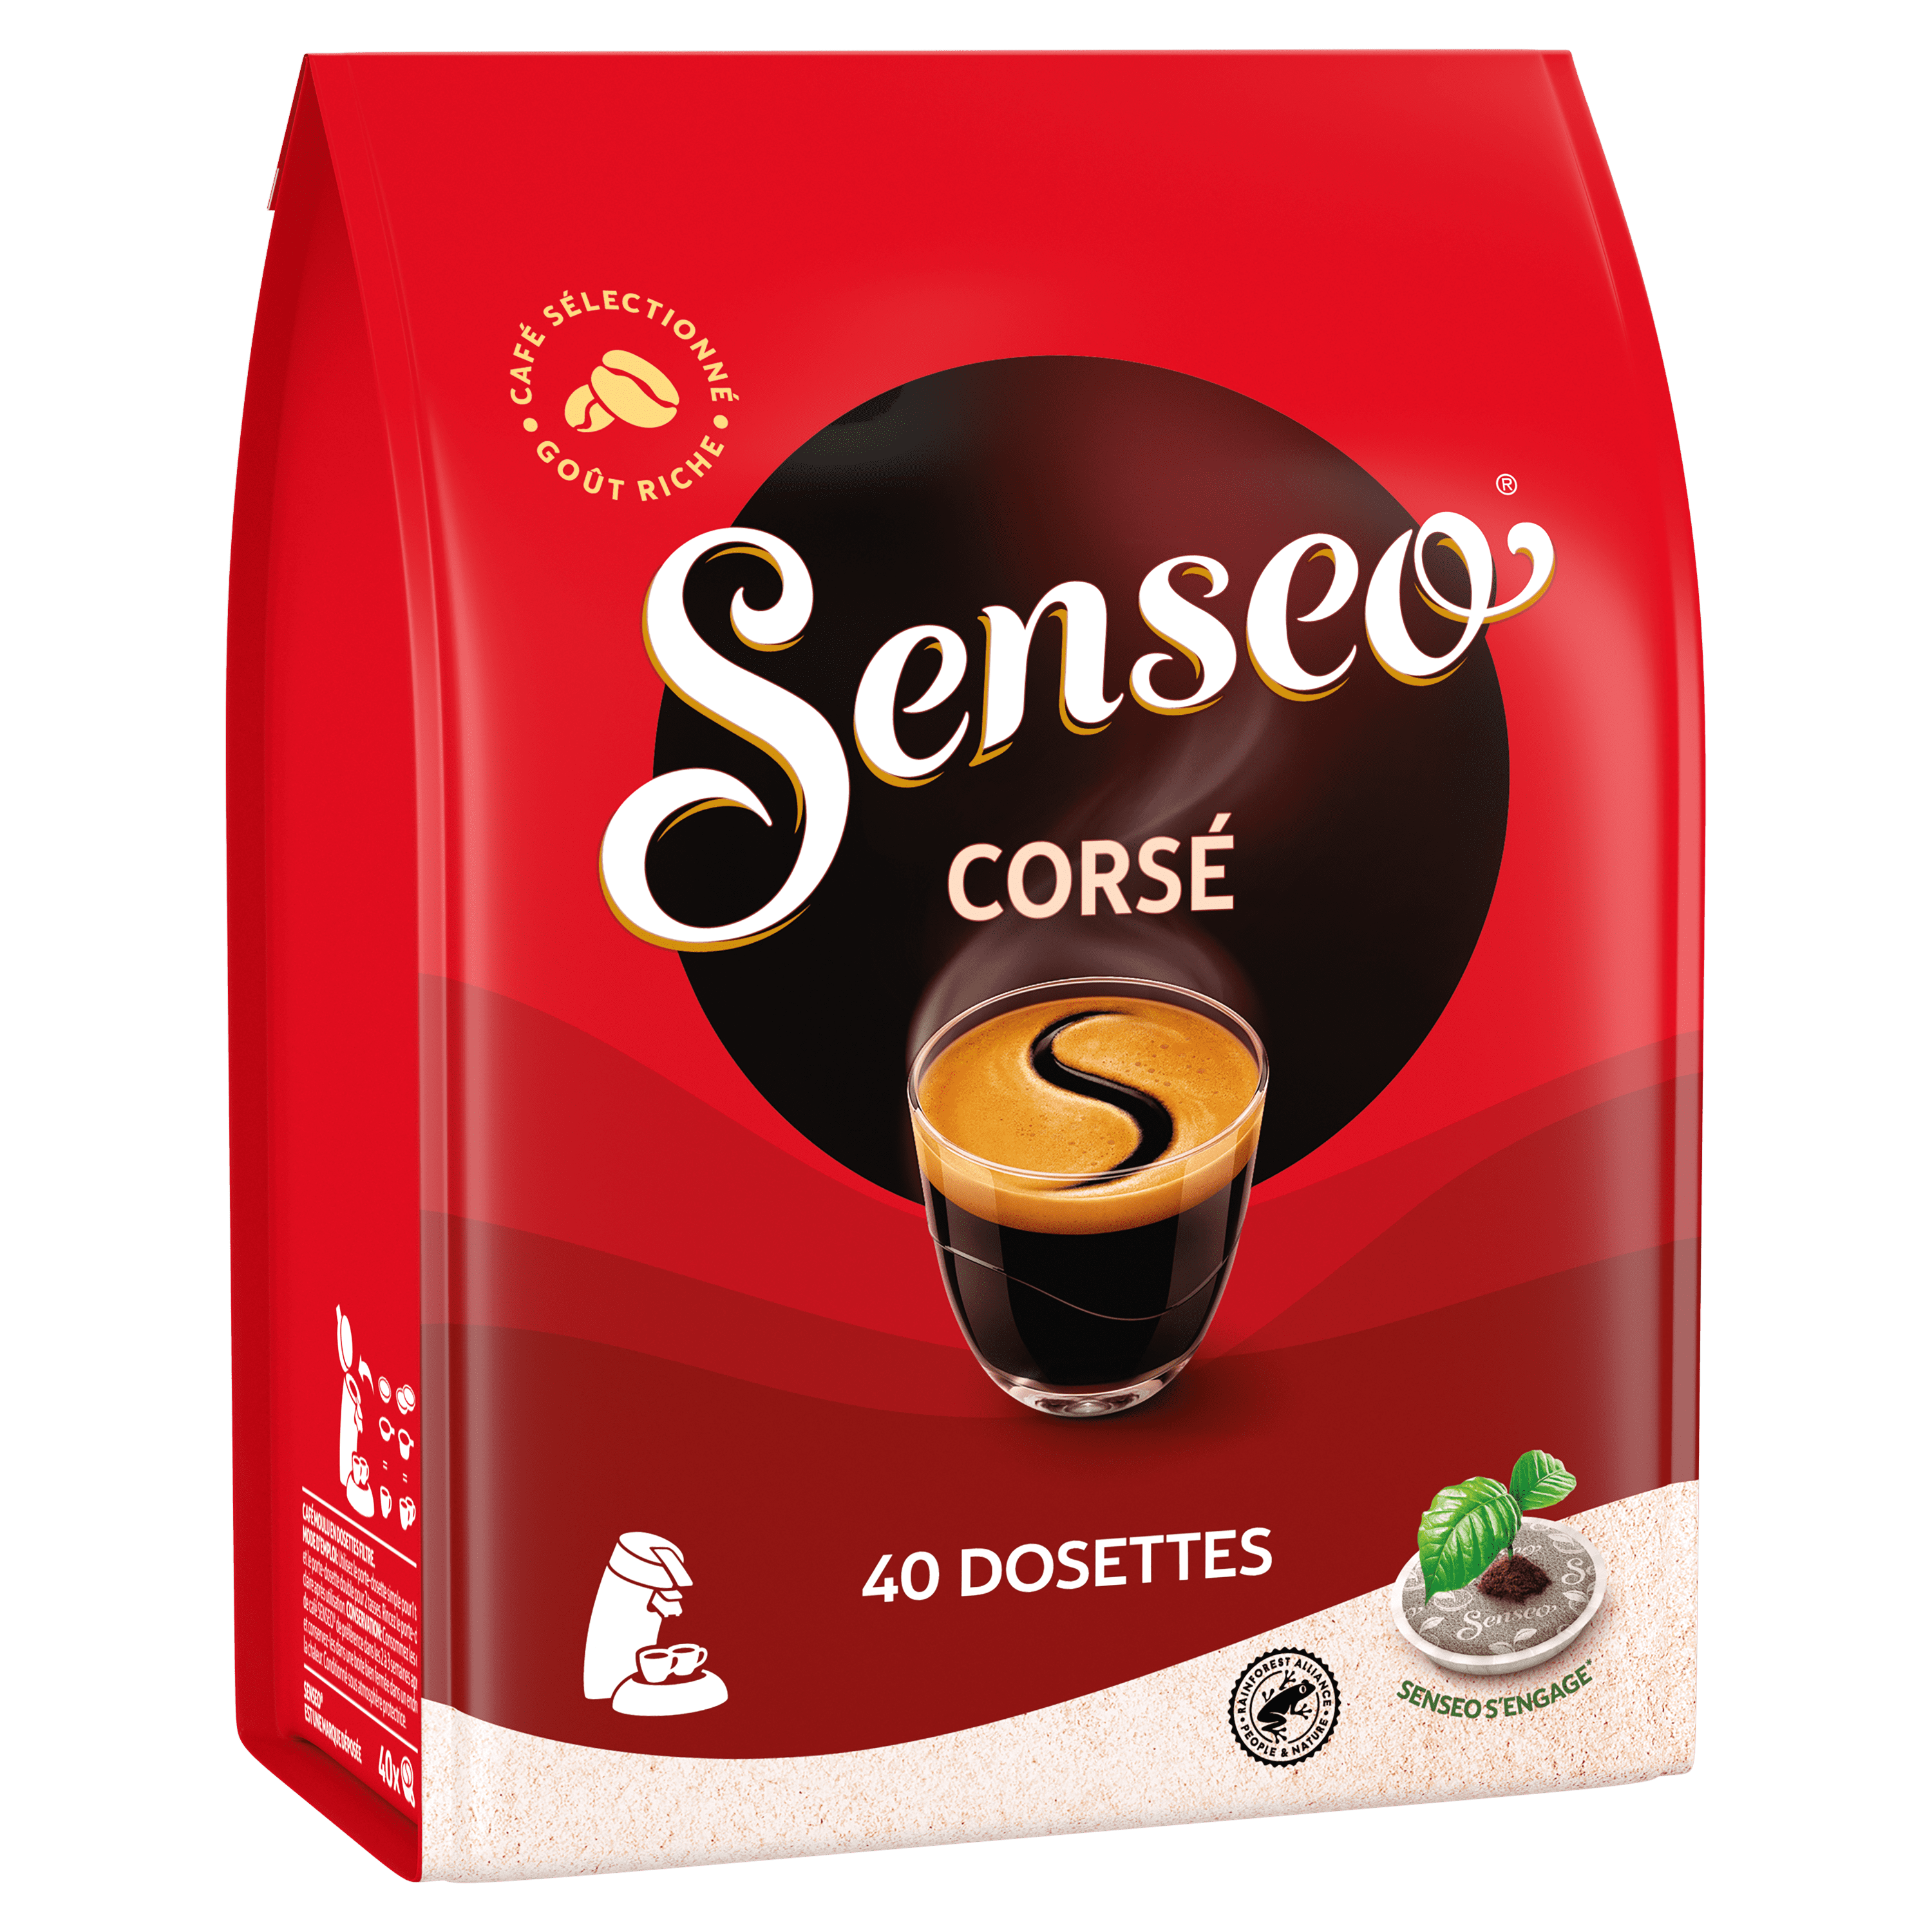 Senseo Vanilla Café Latte (Tasse simple) - 8 dosettes pour Senseo